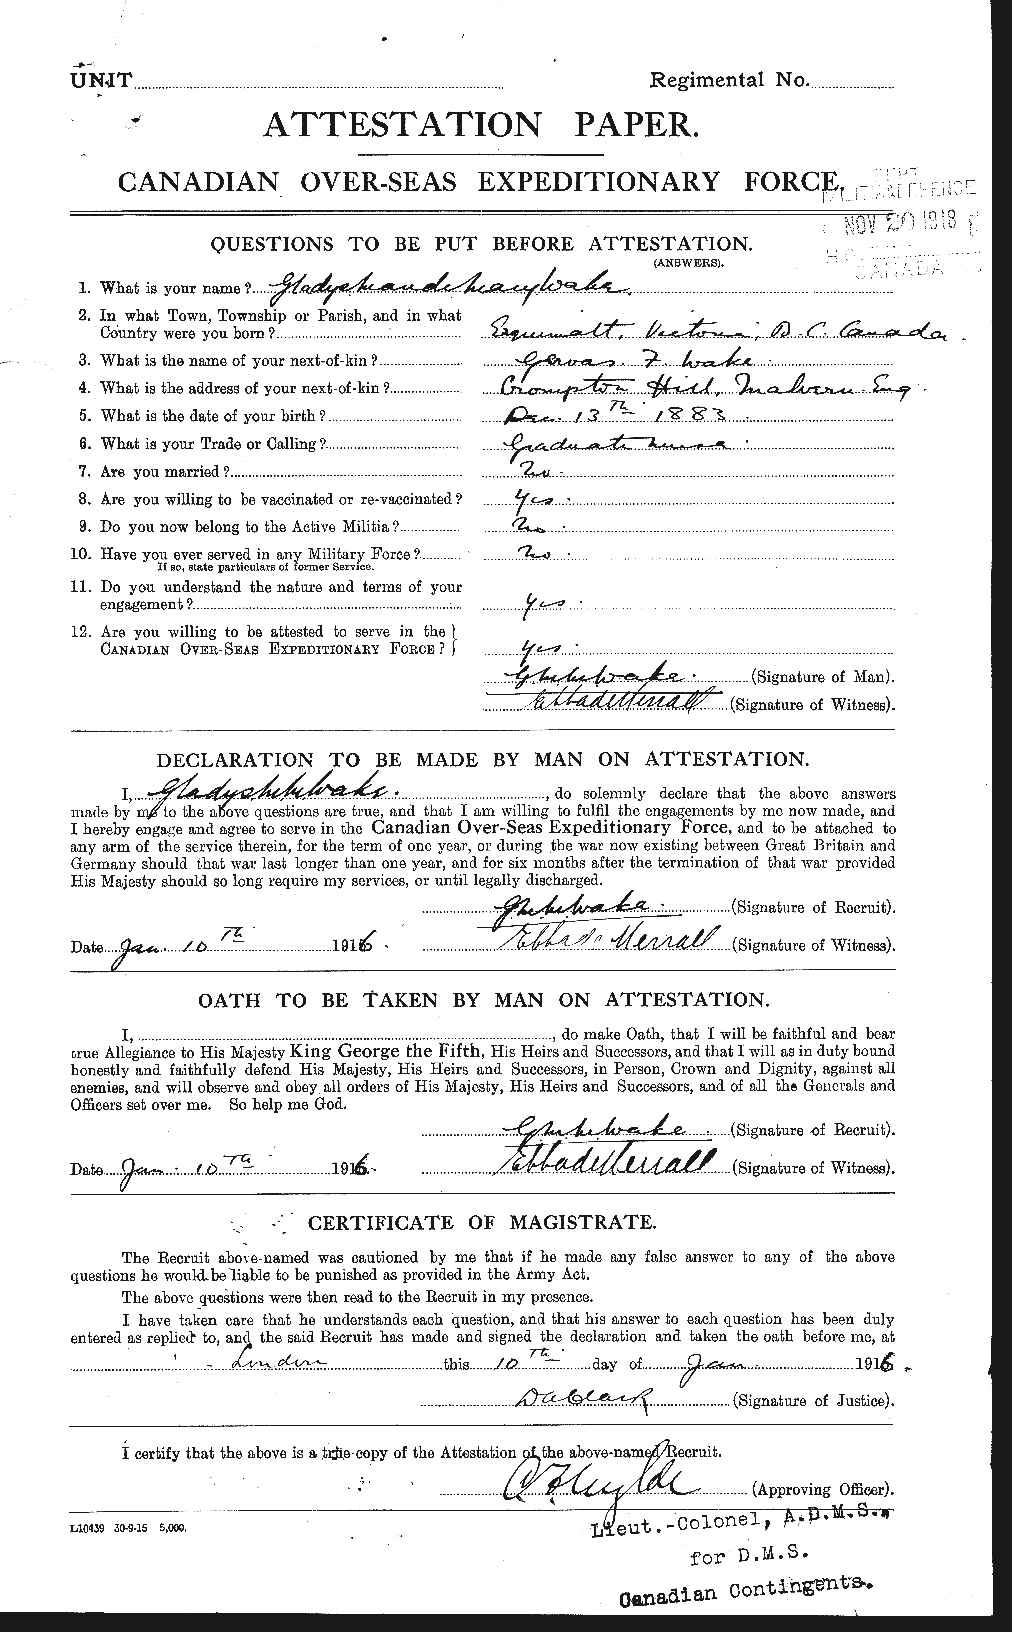 Dossiers du Personnel de la Première Guerre mondiale - CEC 237315a